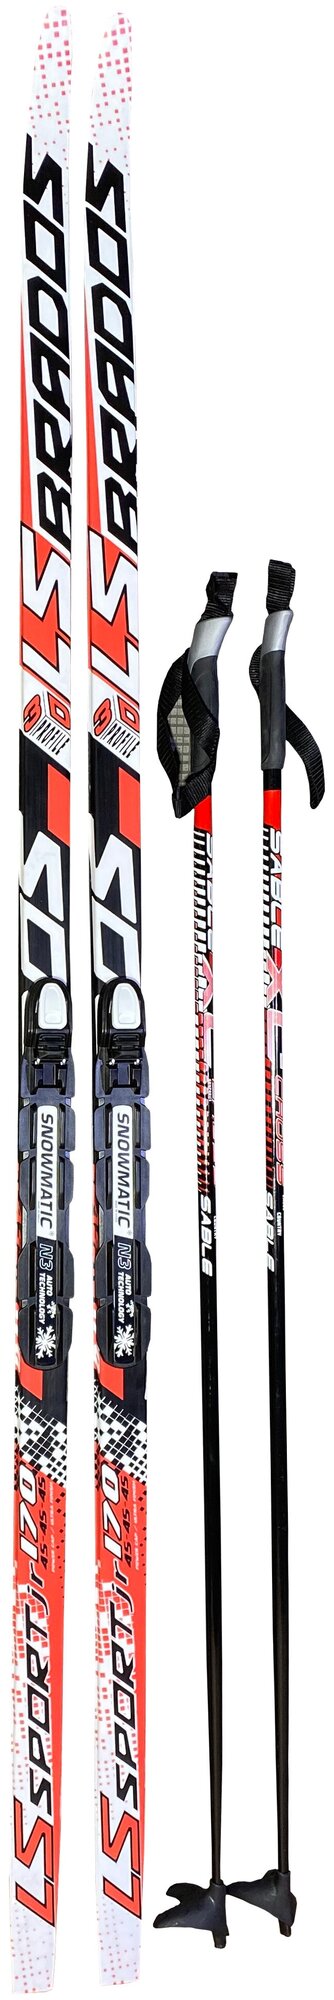 Лыжный комплект STC Brados LS Sport 3D Red 175см STEP NNN (лыжи + палки(130) + крепления)